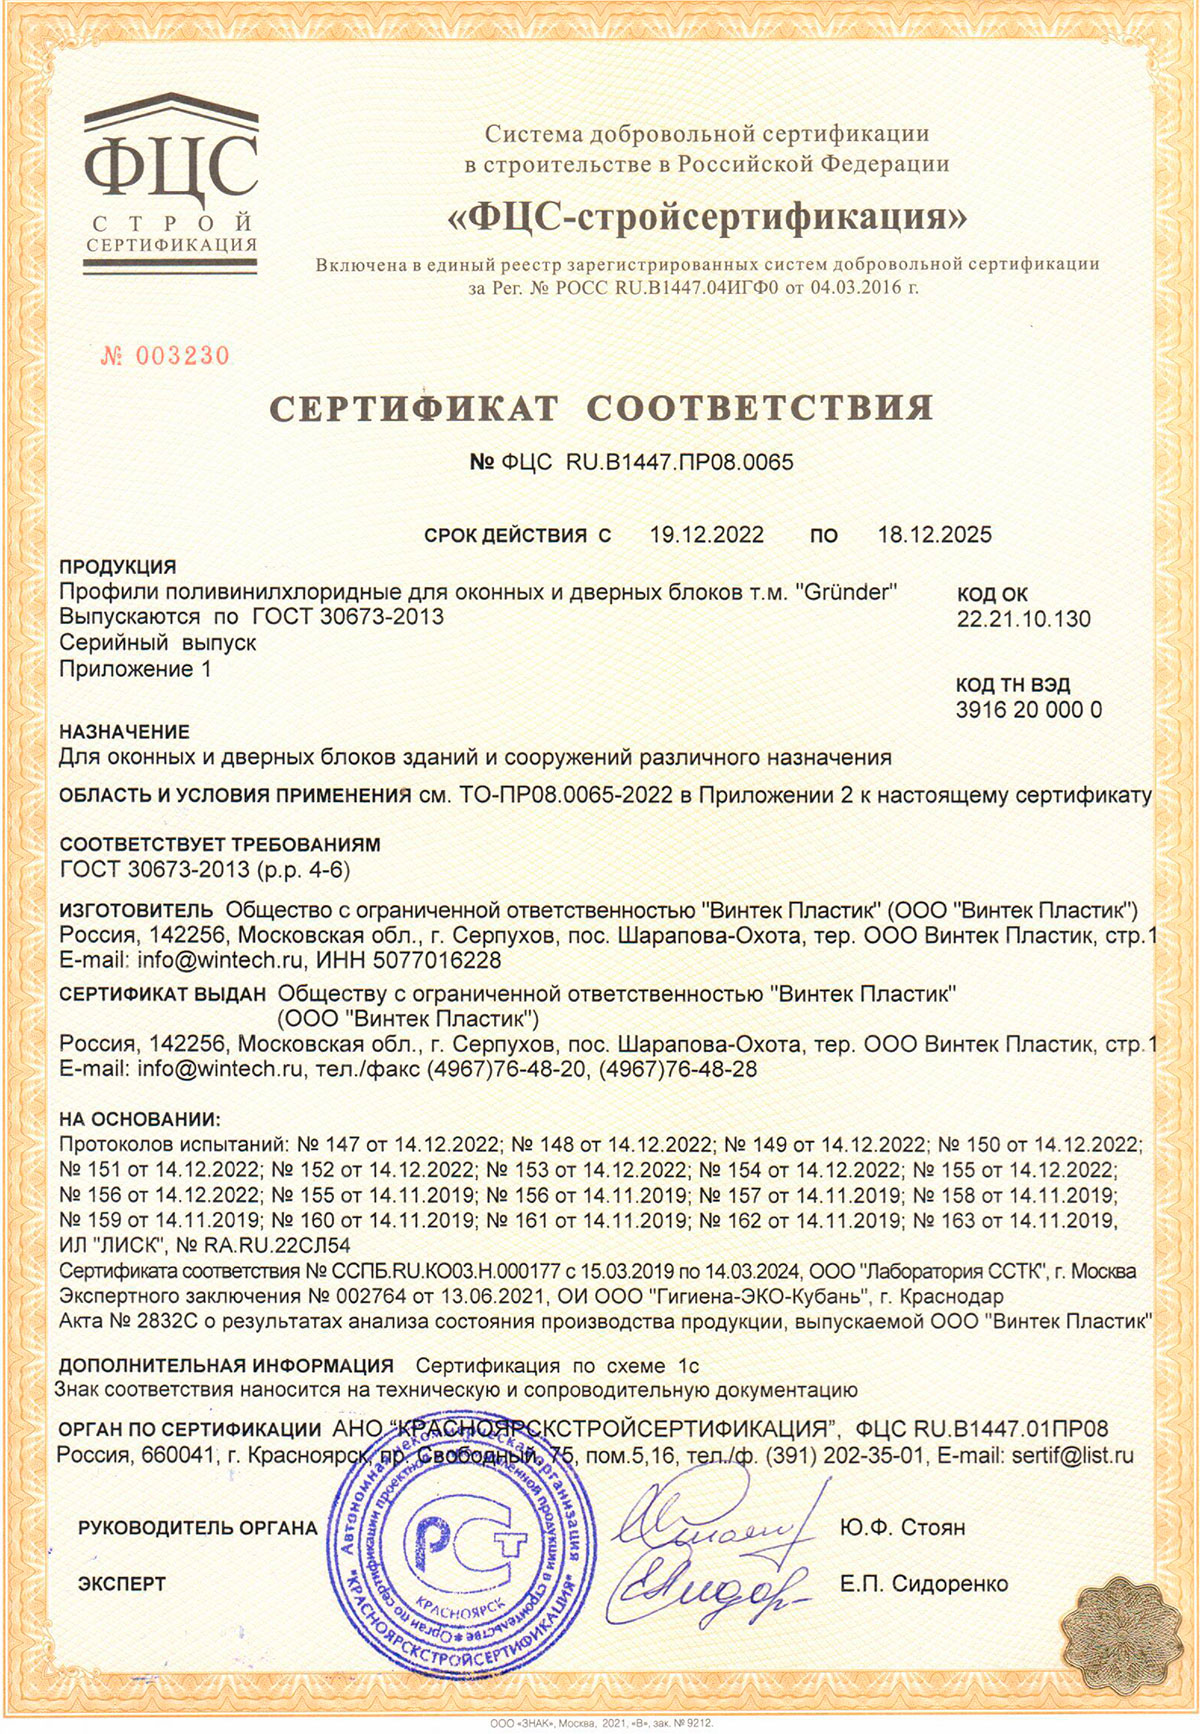 Grunder, сертификат соответствия, 18.12.2025